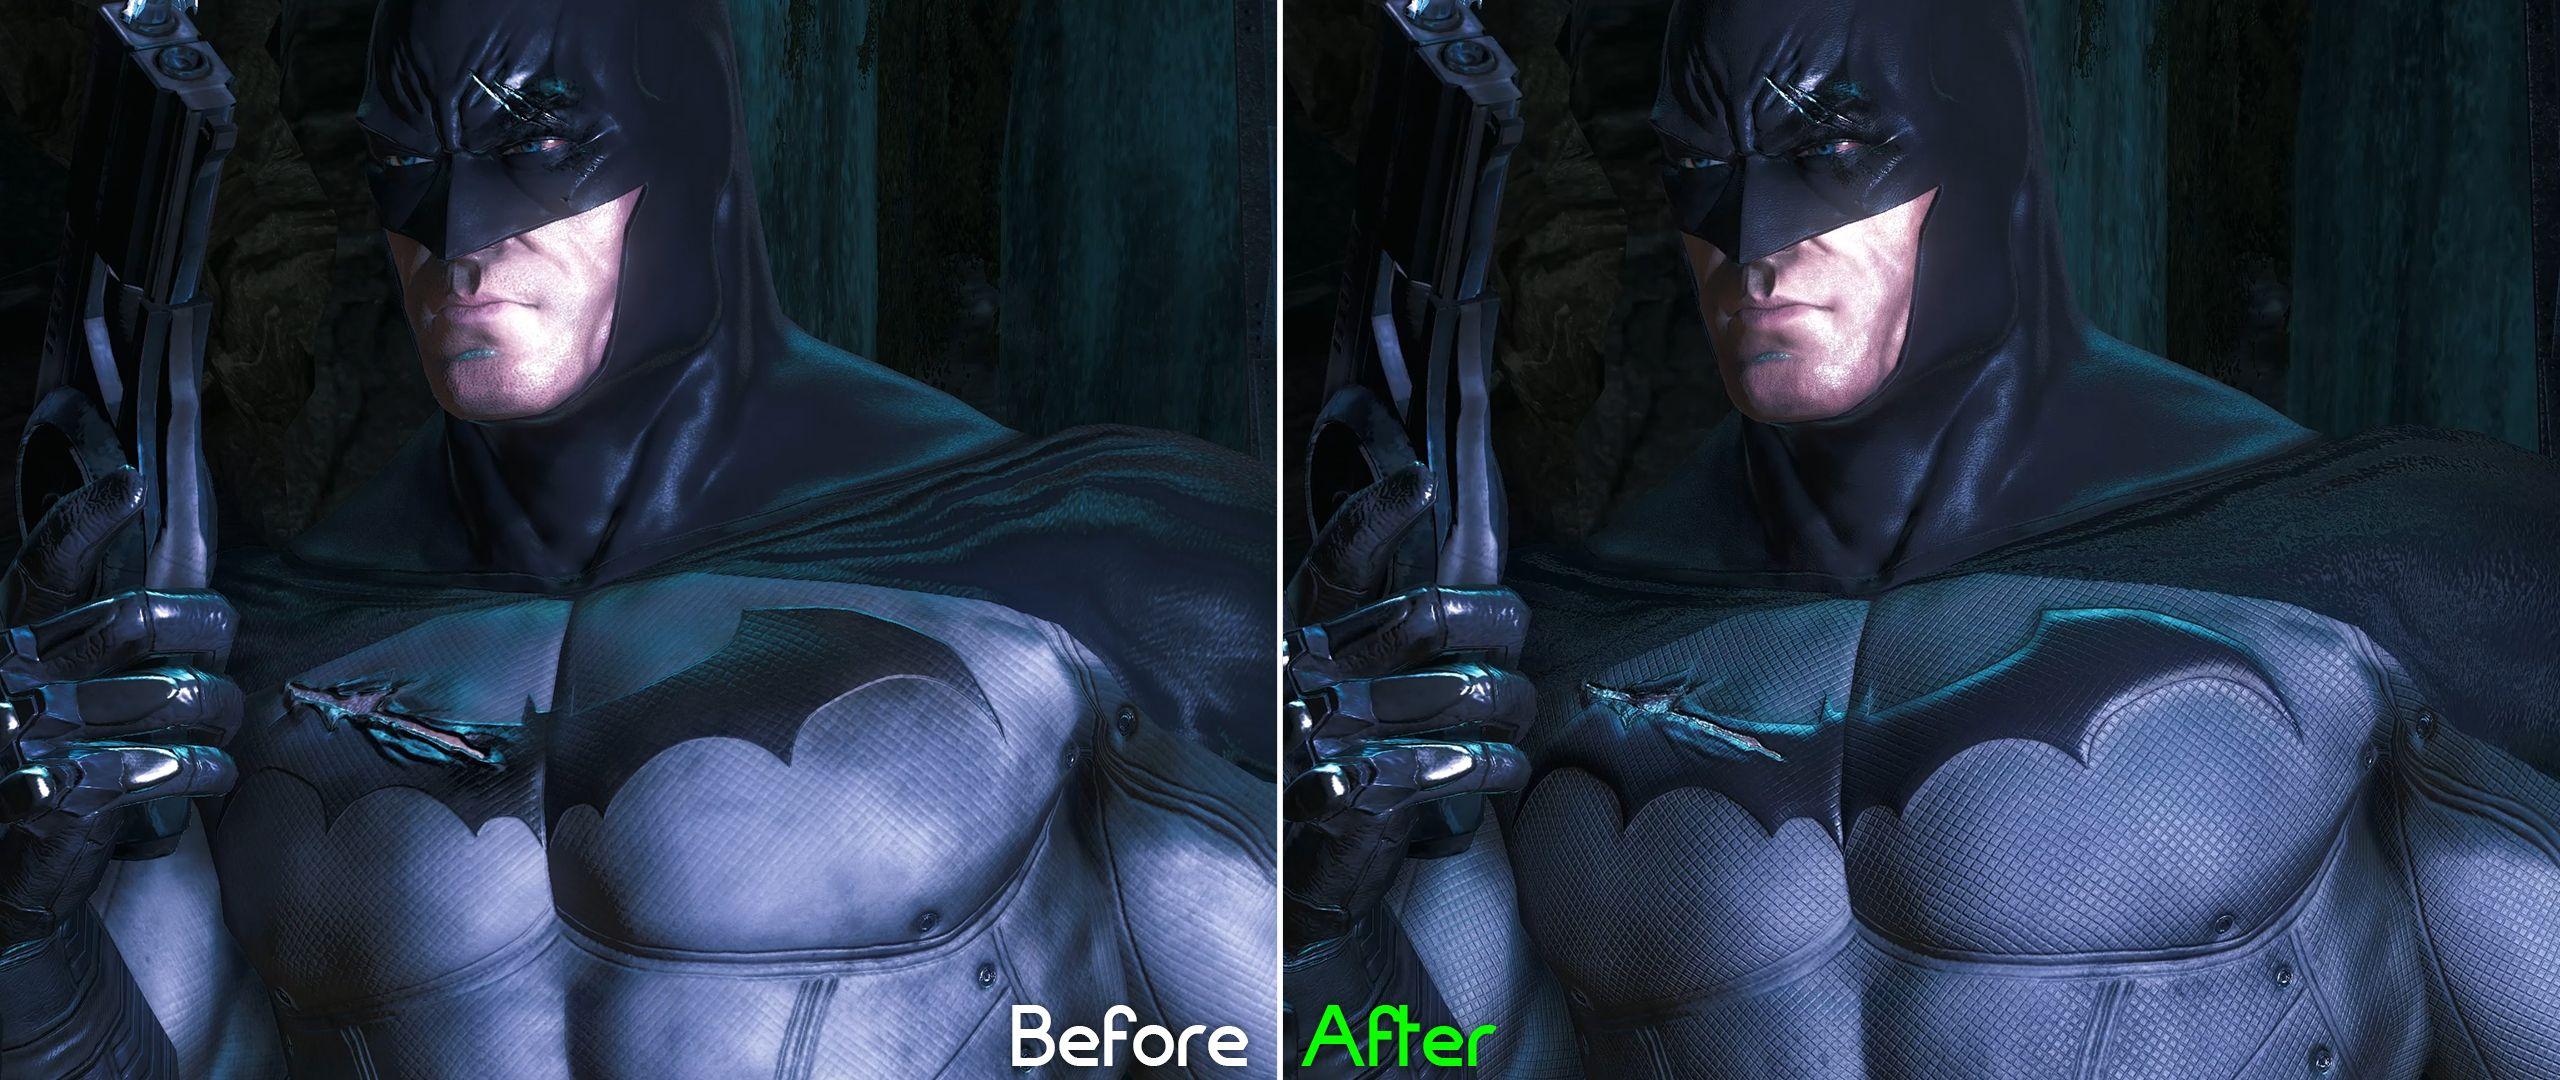 Batman Arkham Asylum Batman Logo - New Batman Arkham Asylum HD Texture Pack upgrades/enhances 50% of ...